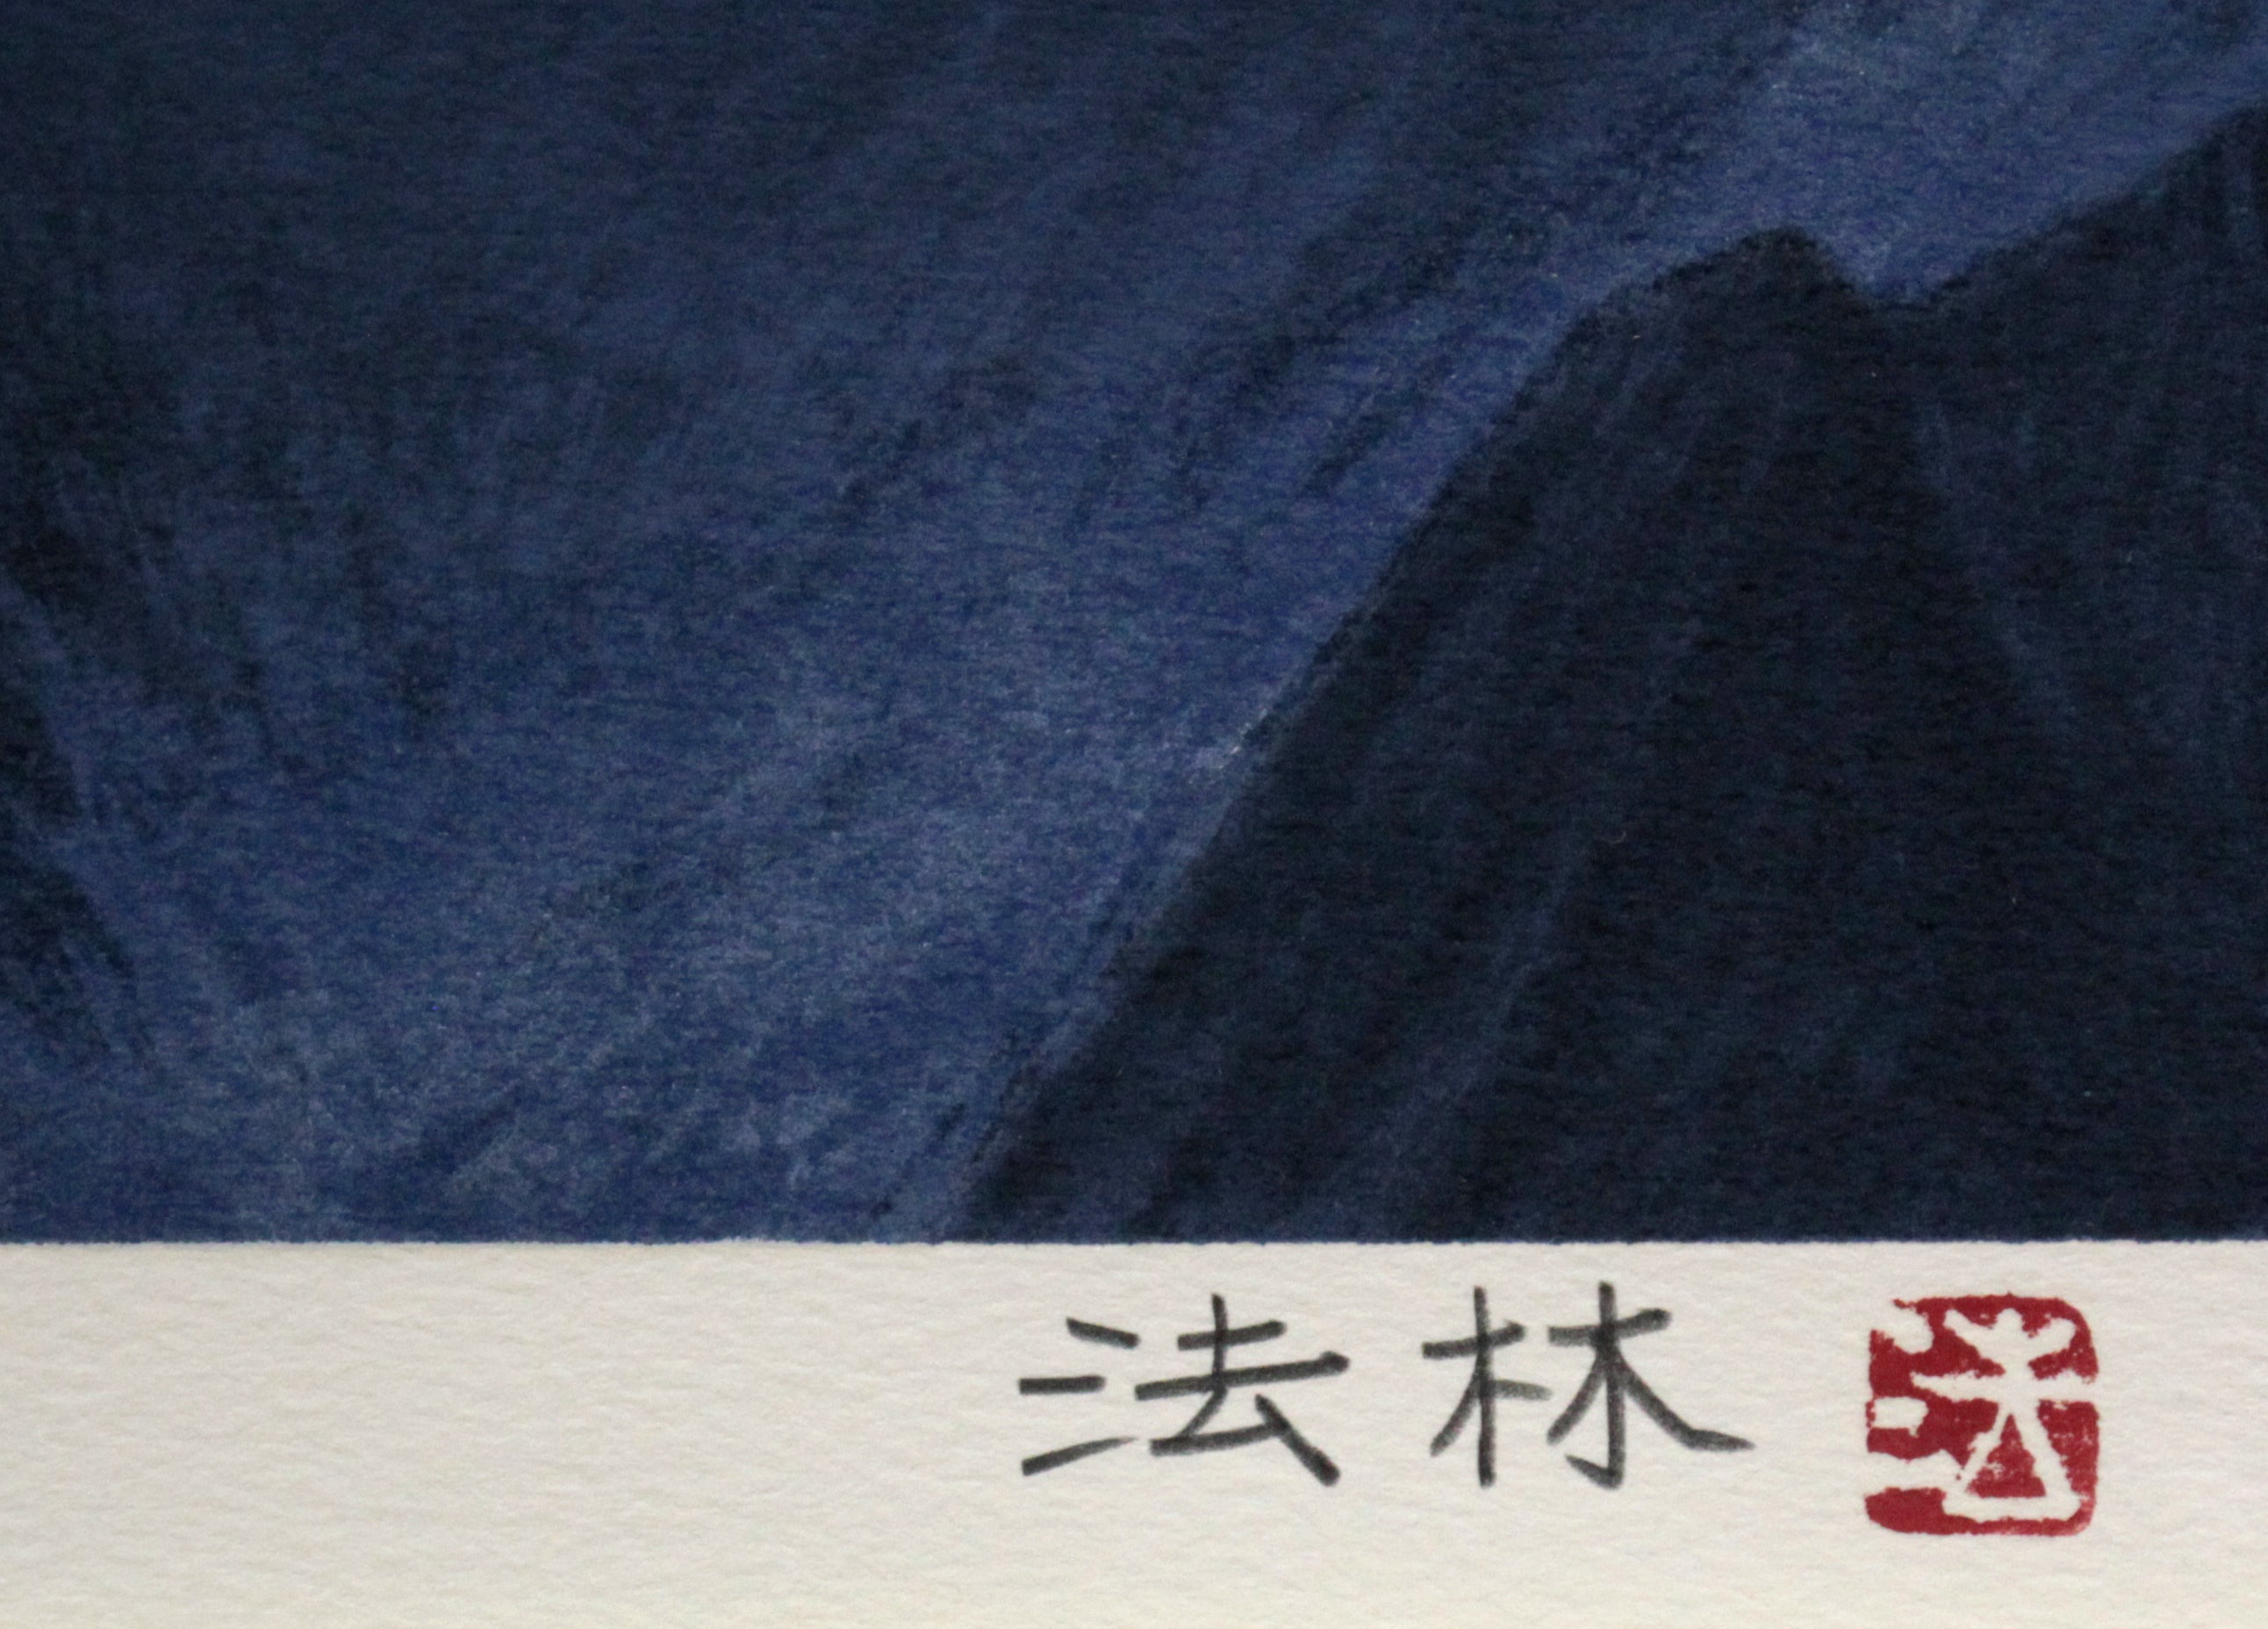 福王寺 法林 『ヒマラヤの月』 リトグラフ - 北海道画廊